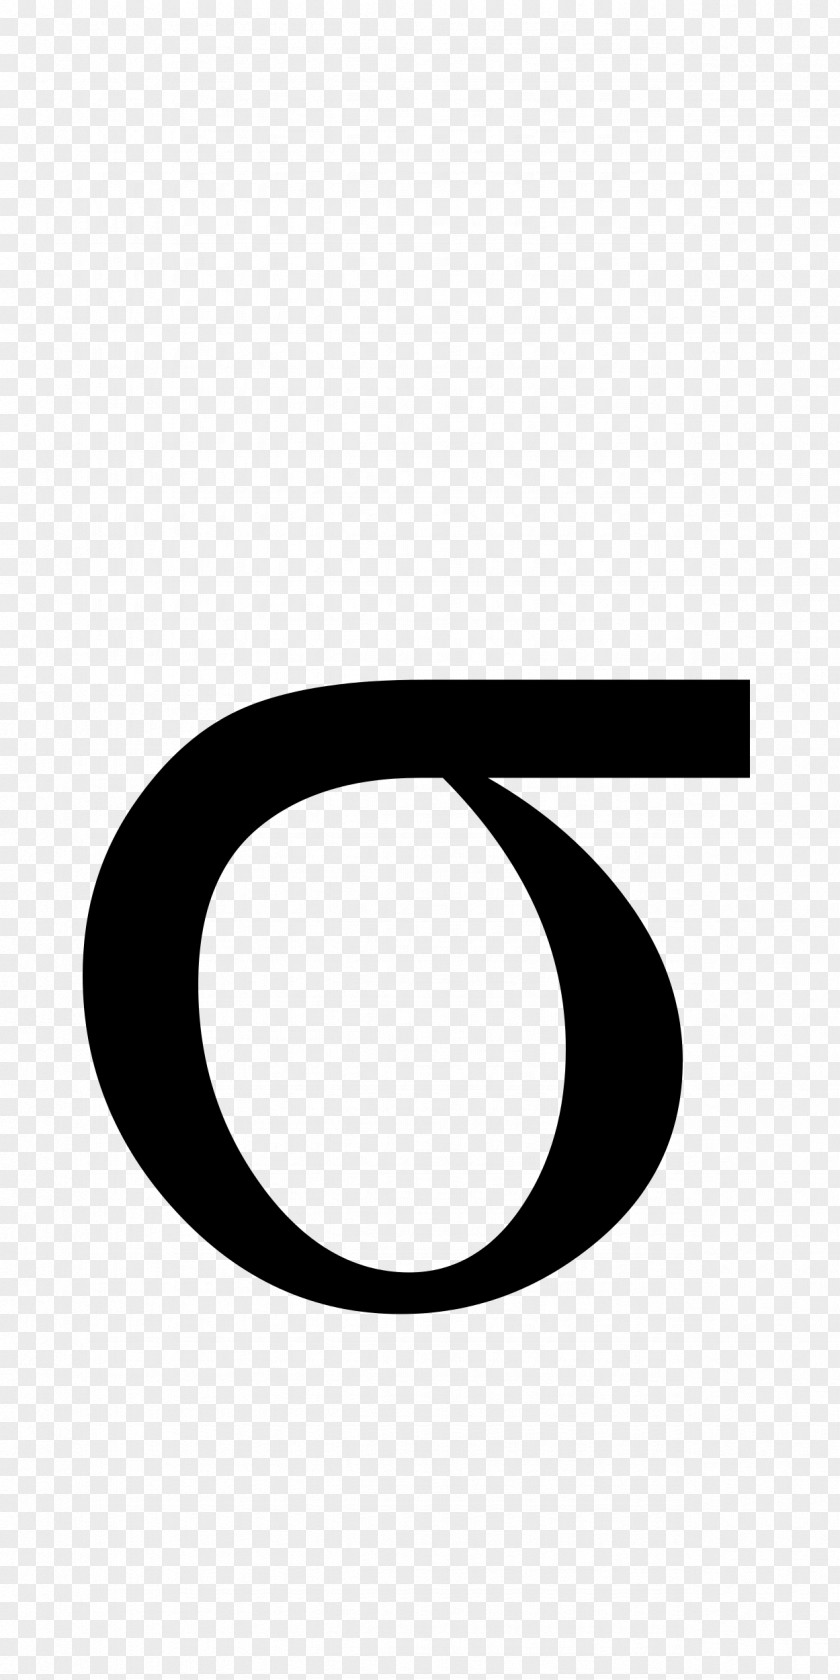 Sigma Symbol Monochrome Photography Greek Alphabet Letter Language Bas De Casse PNG